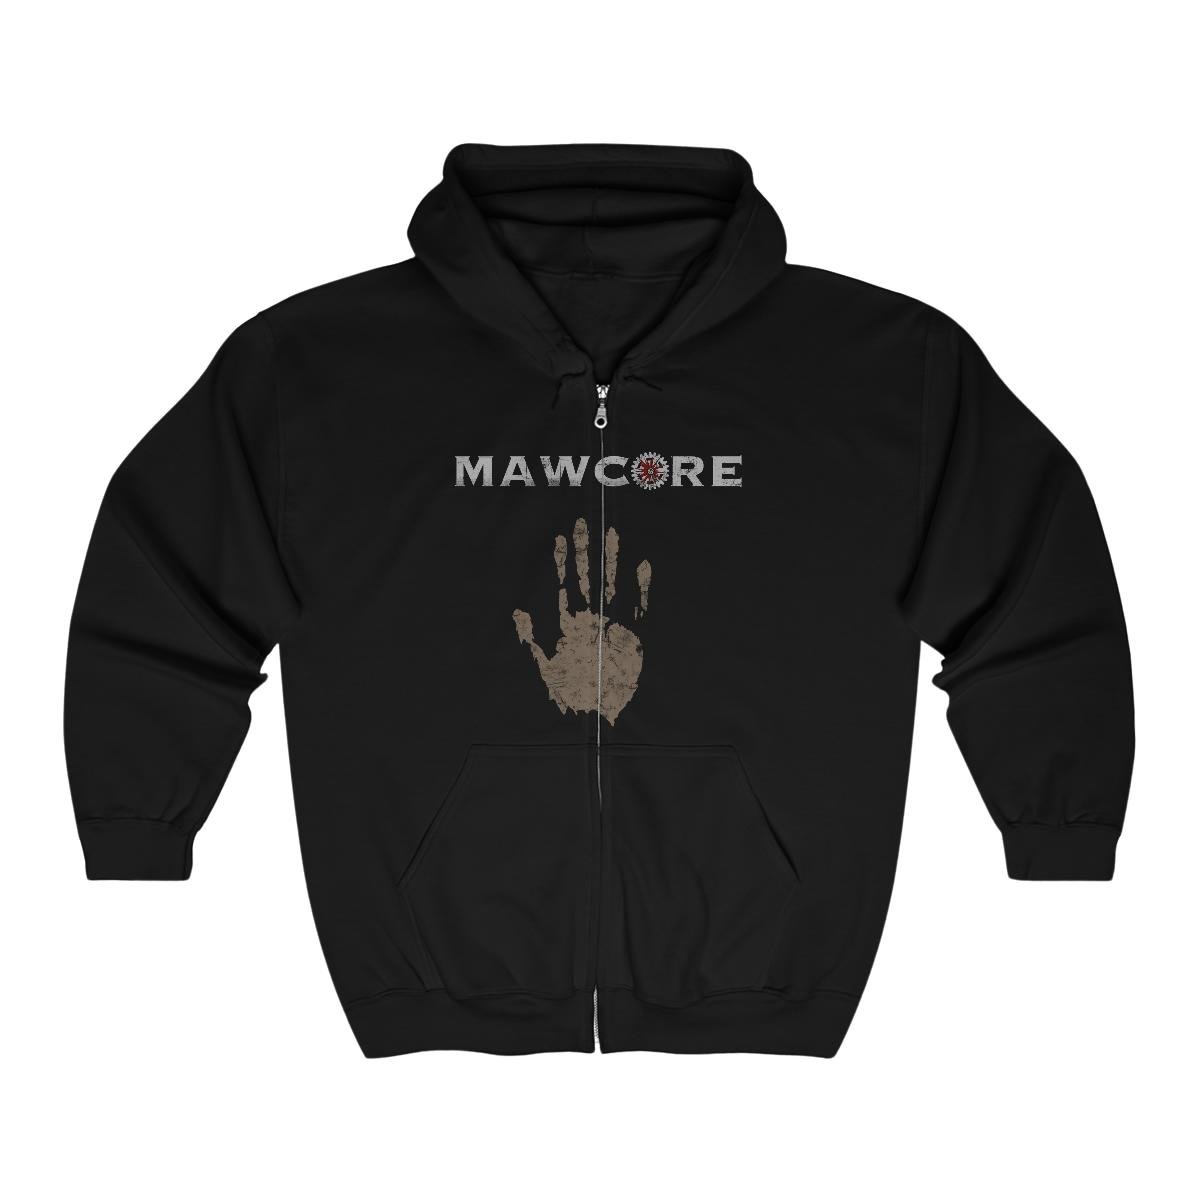 Mawcore Mud Hand Full Zip Hooded Sweatshirt